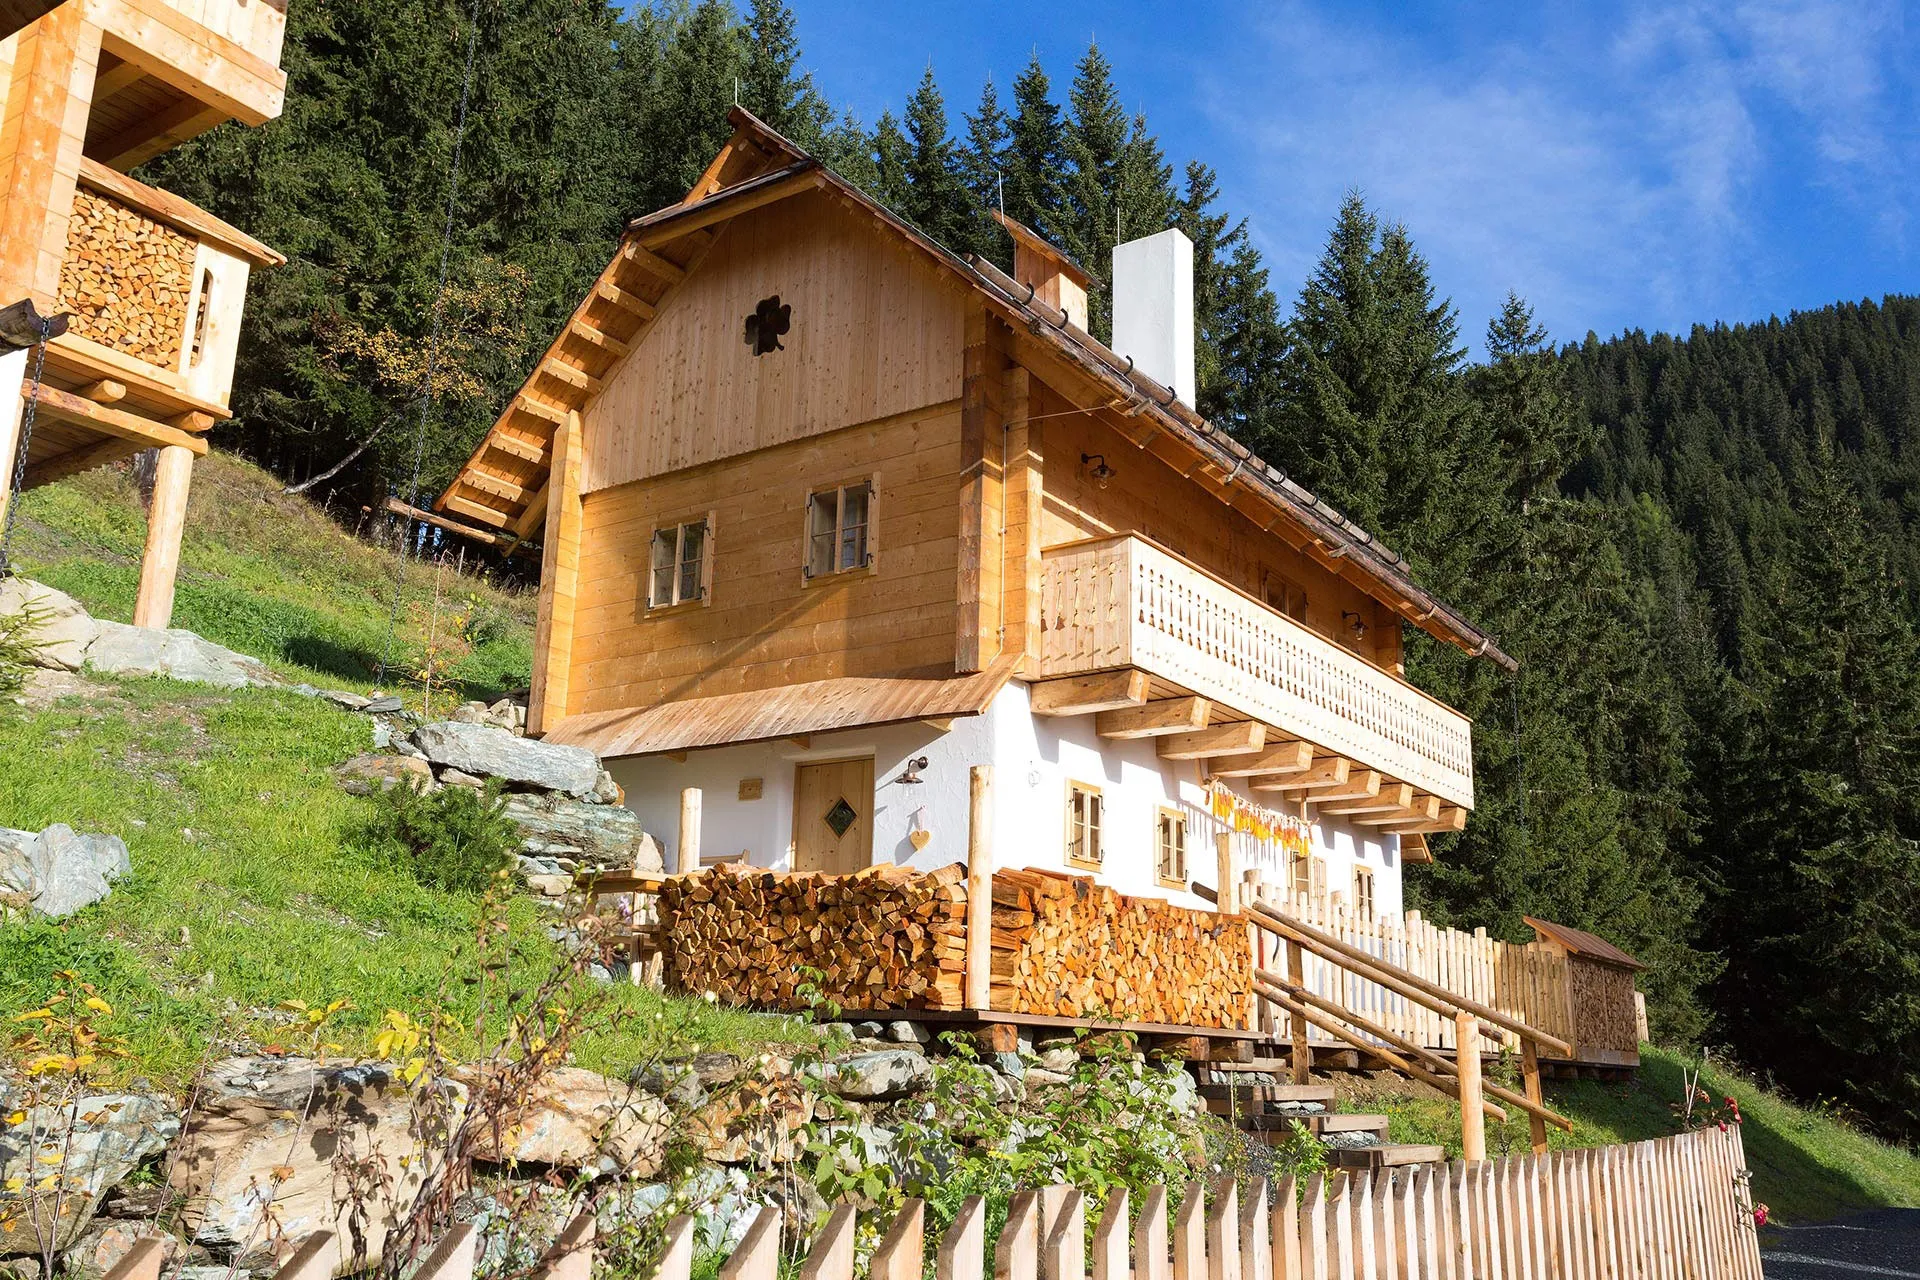 Bäuerliches Holzhaus mit Holzstapeln